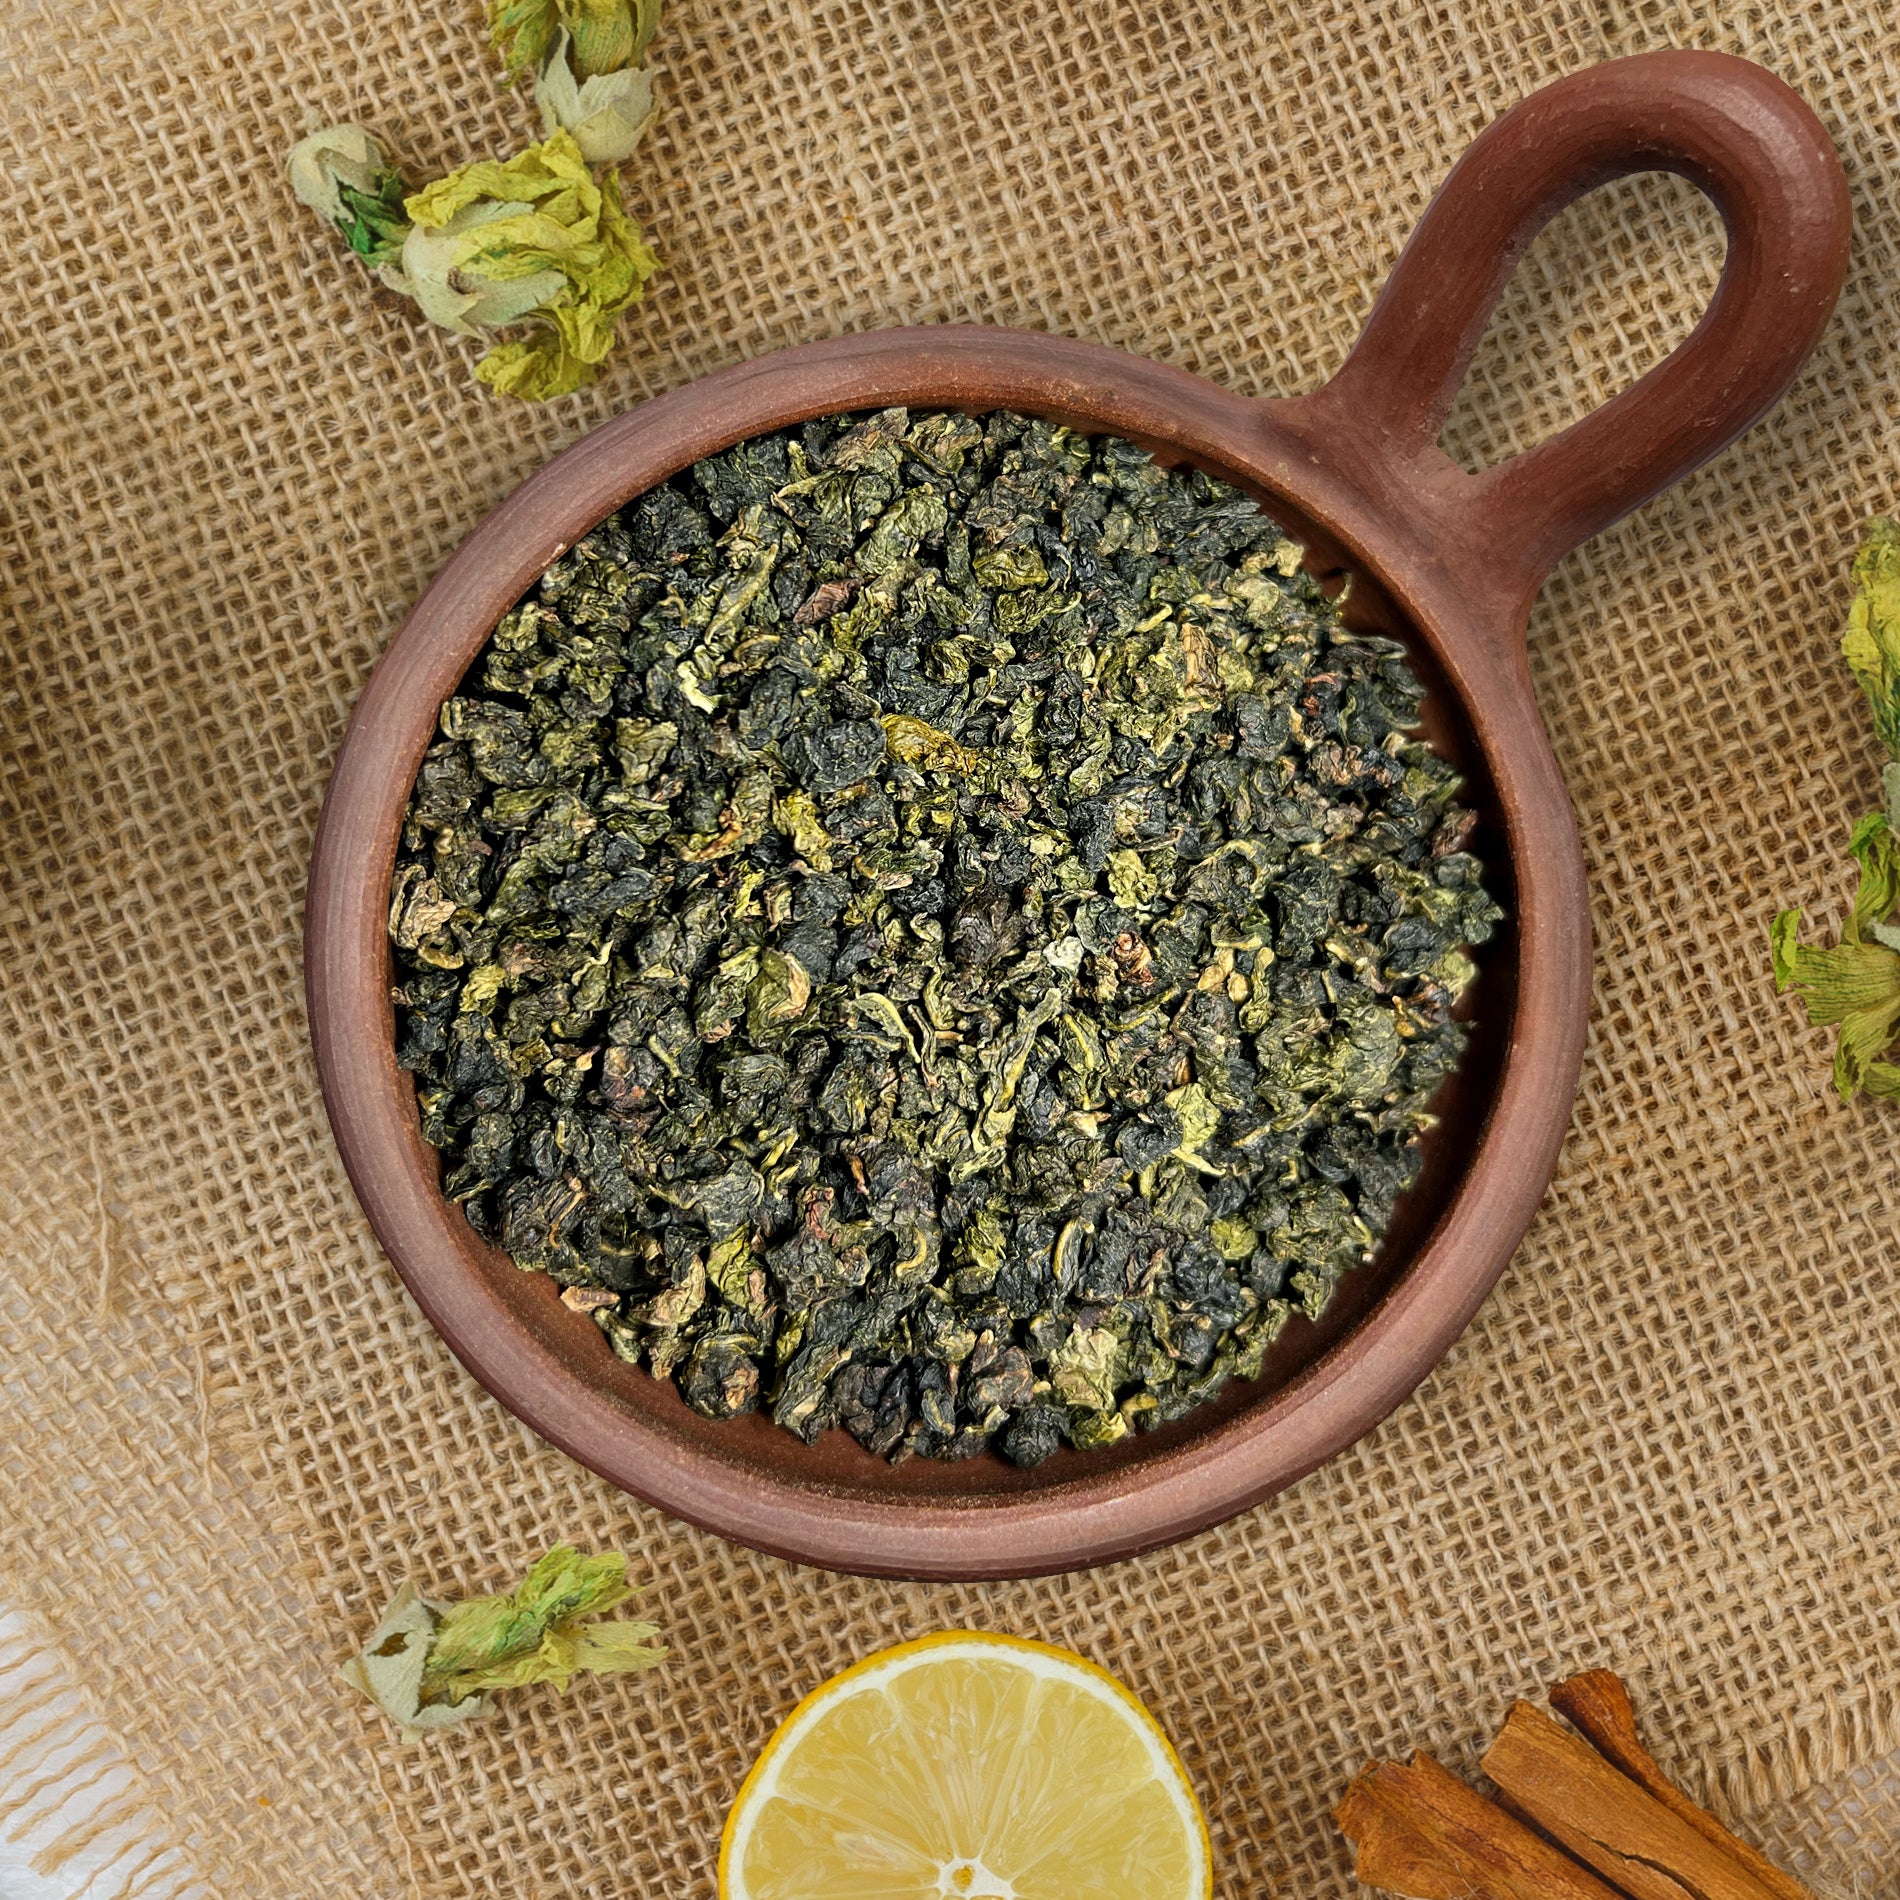 Té Oolong o té azul. Contiene propiedades antioxidante, diurético y estimulante.